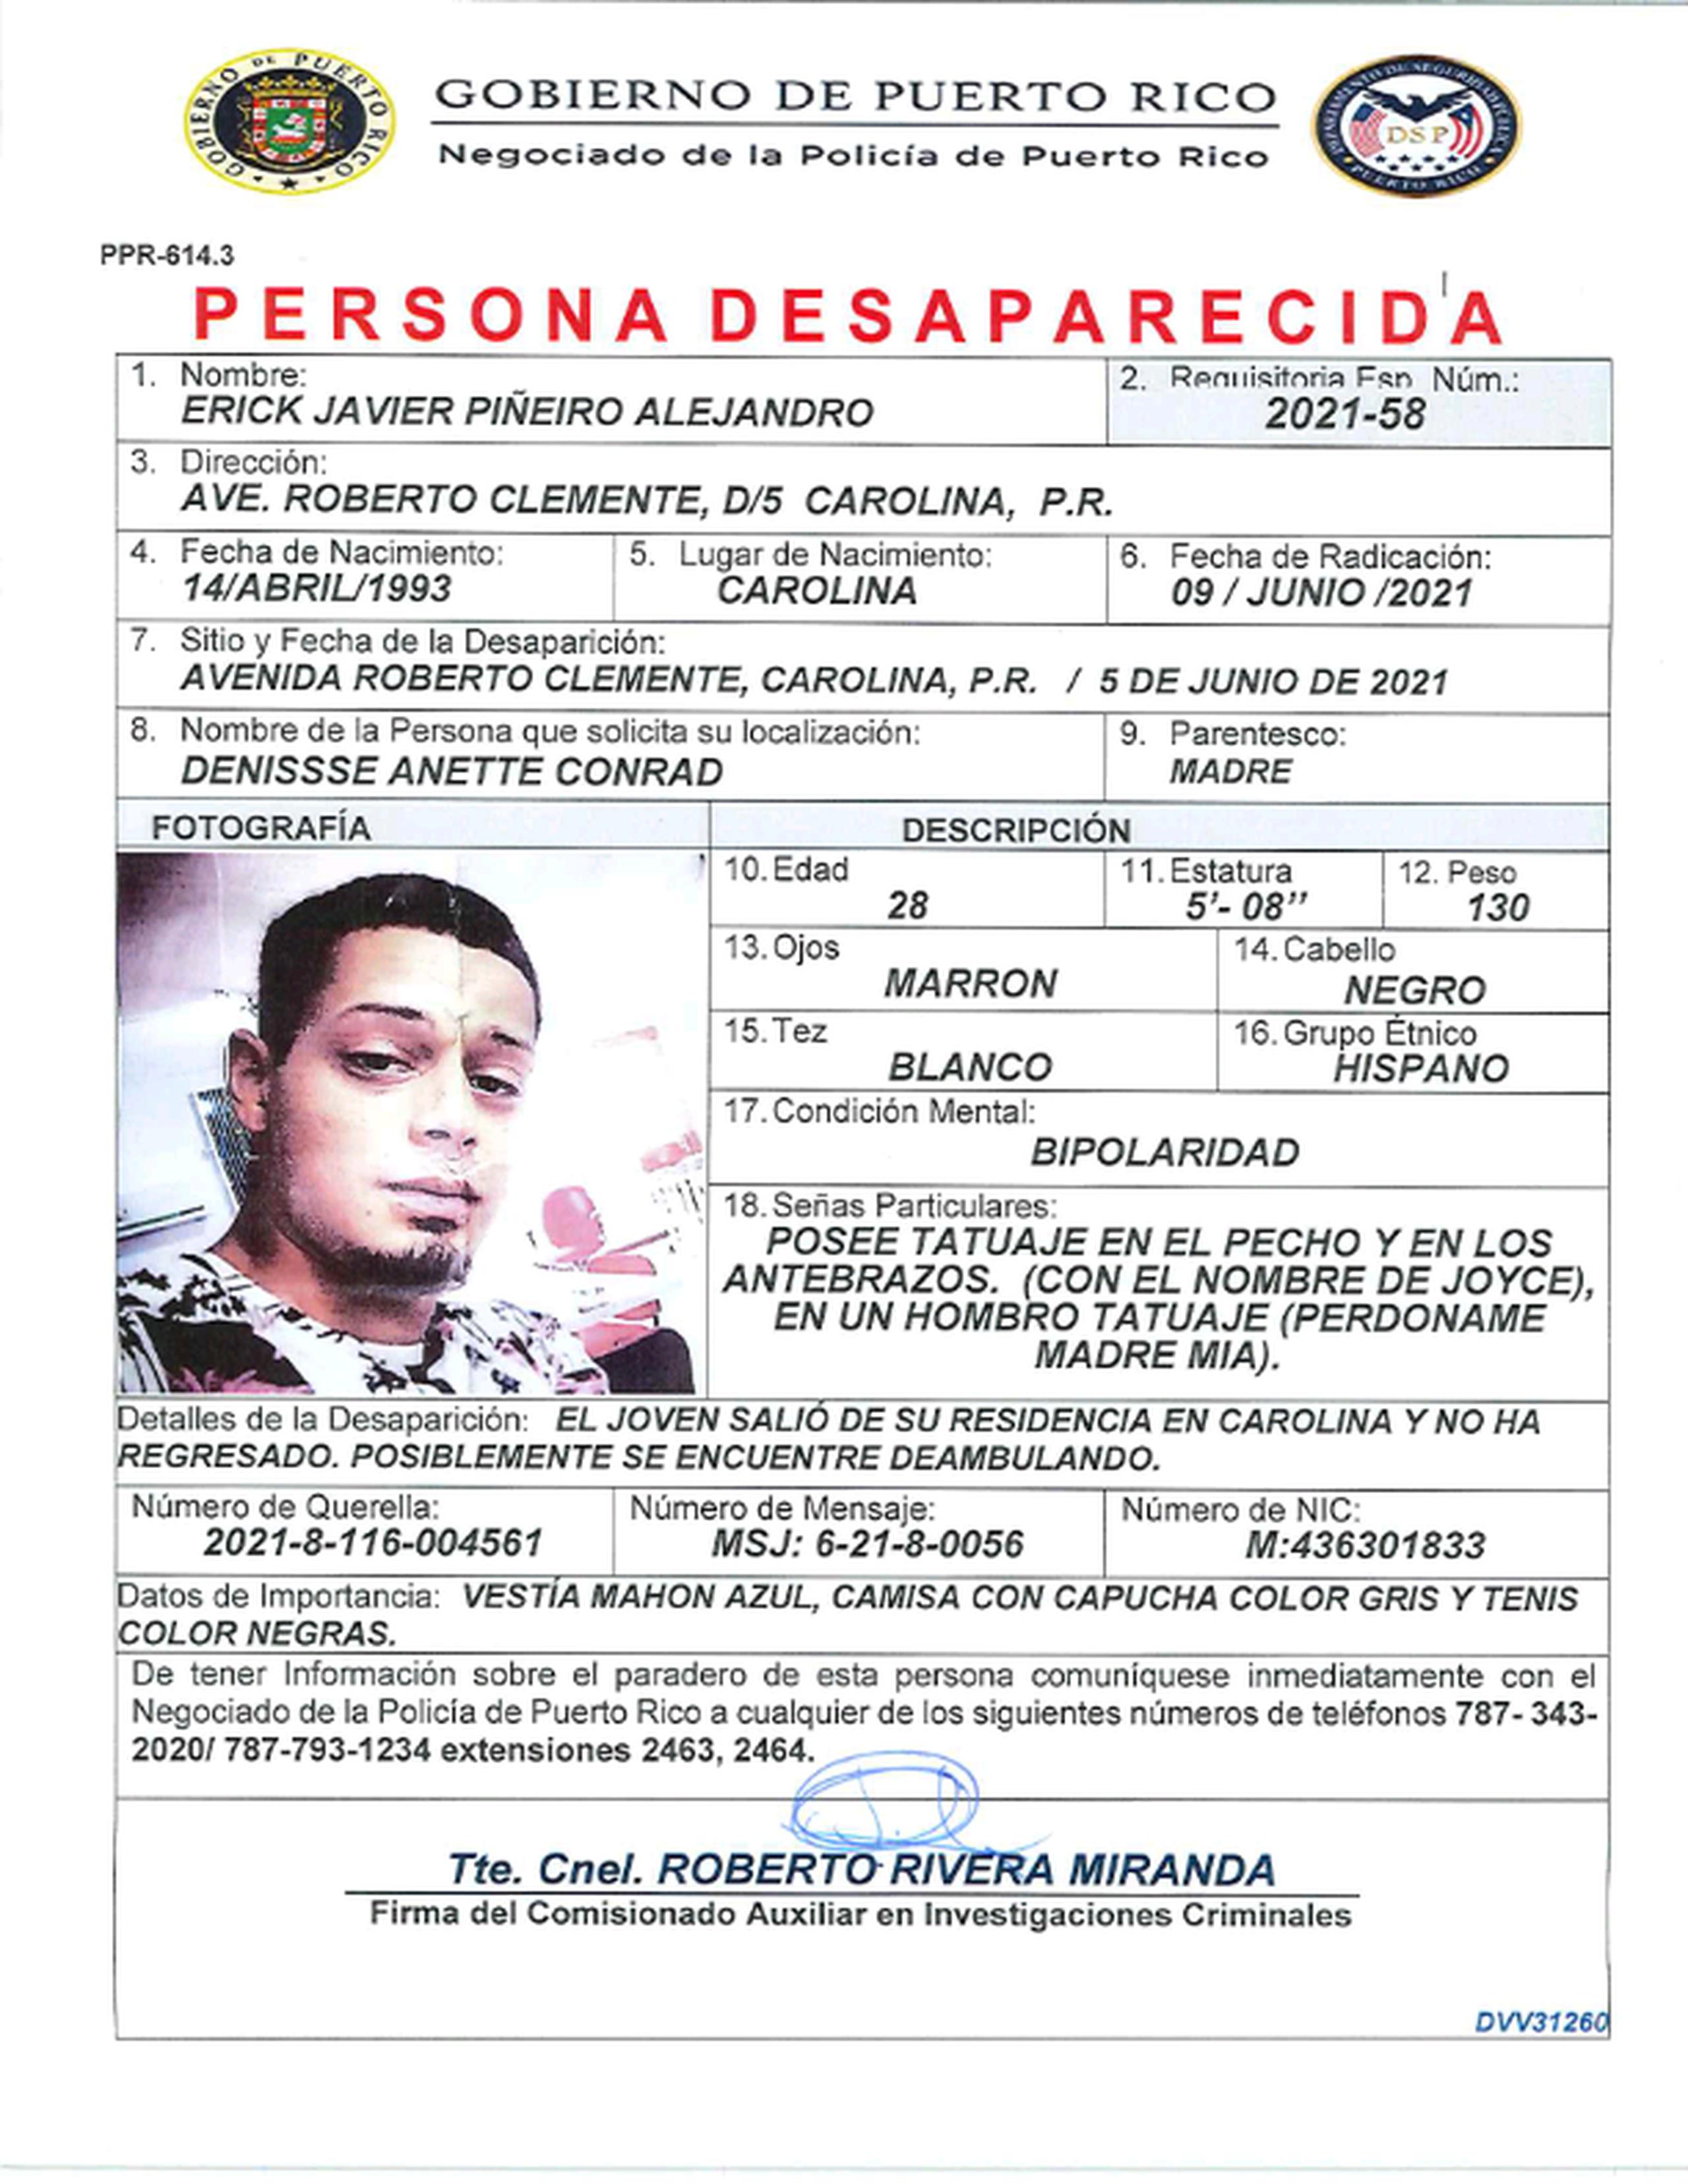 Erick J. Piñeiro Alejandro, de 28 años, se encuentra desaparecido desde el 5 de junio cuando salió de su residencia en la avenida Roberto Clemente en Carolina y no regresó.